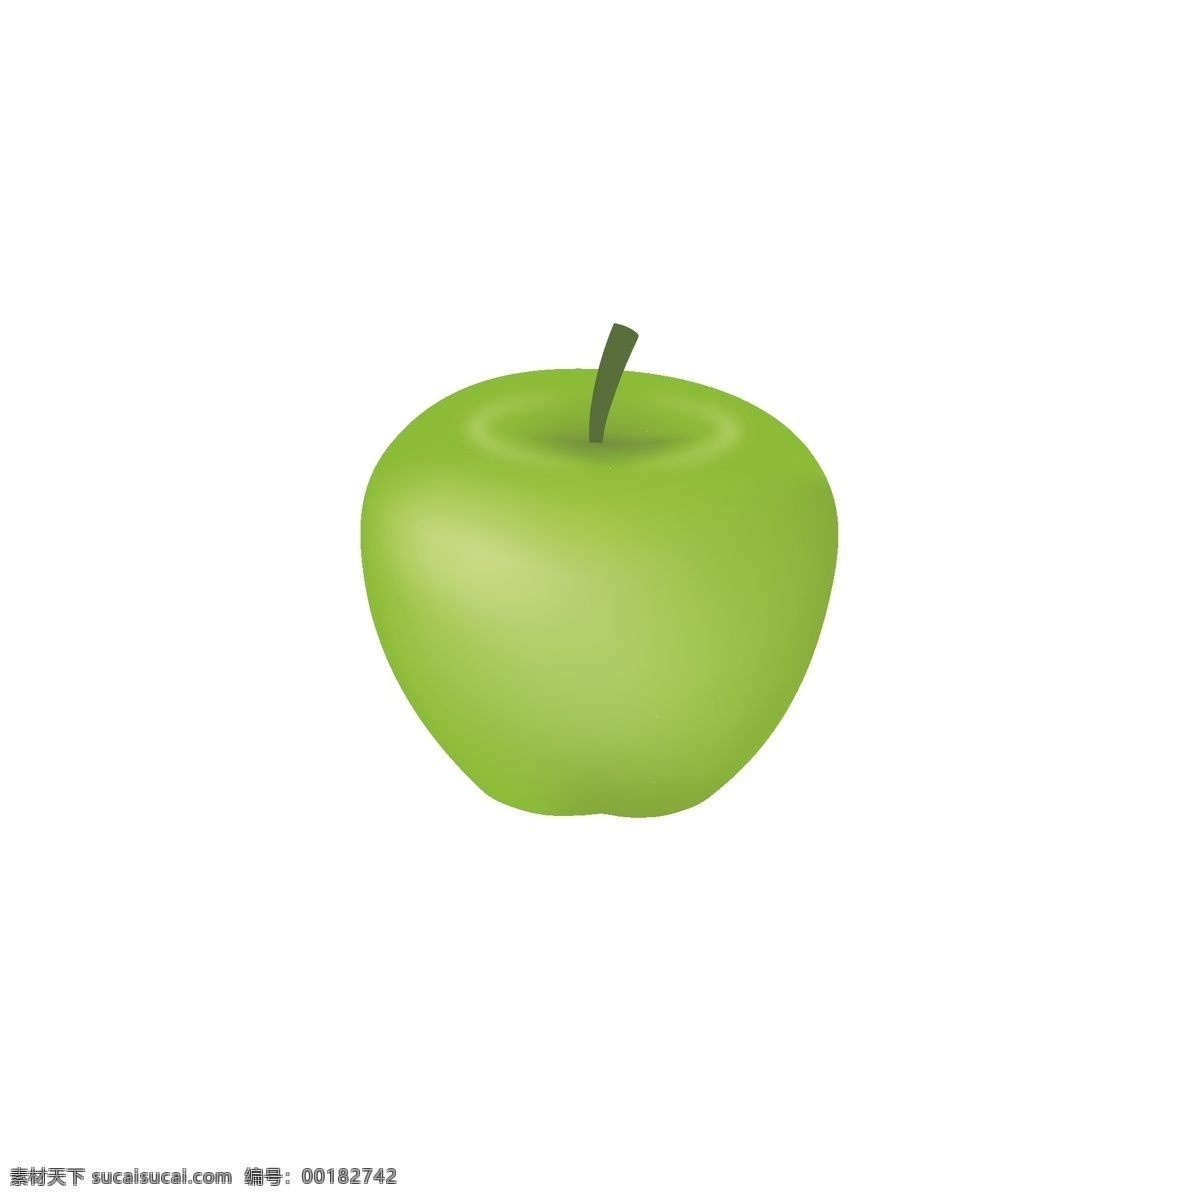 原创 手绘 青苹果 立体 渐变 卡通 矢量 苹果 手绘苹果 水果